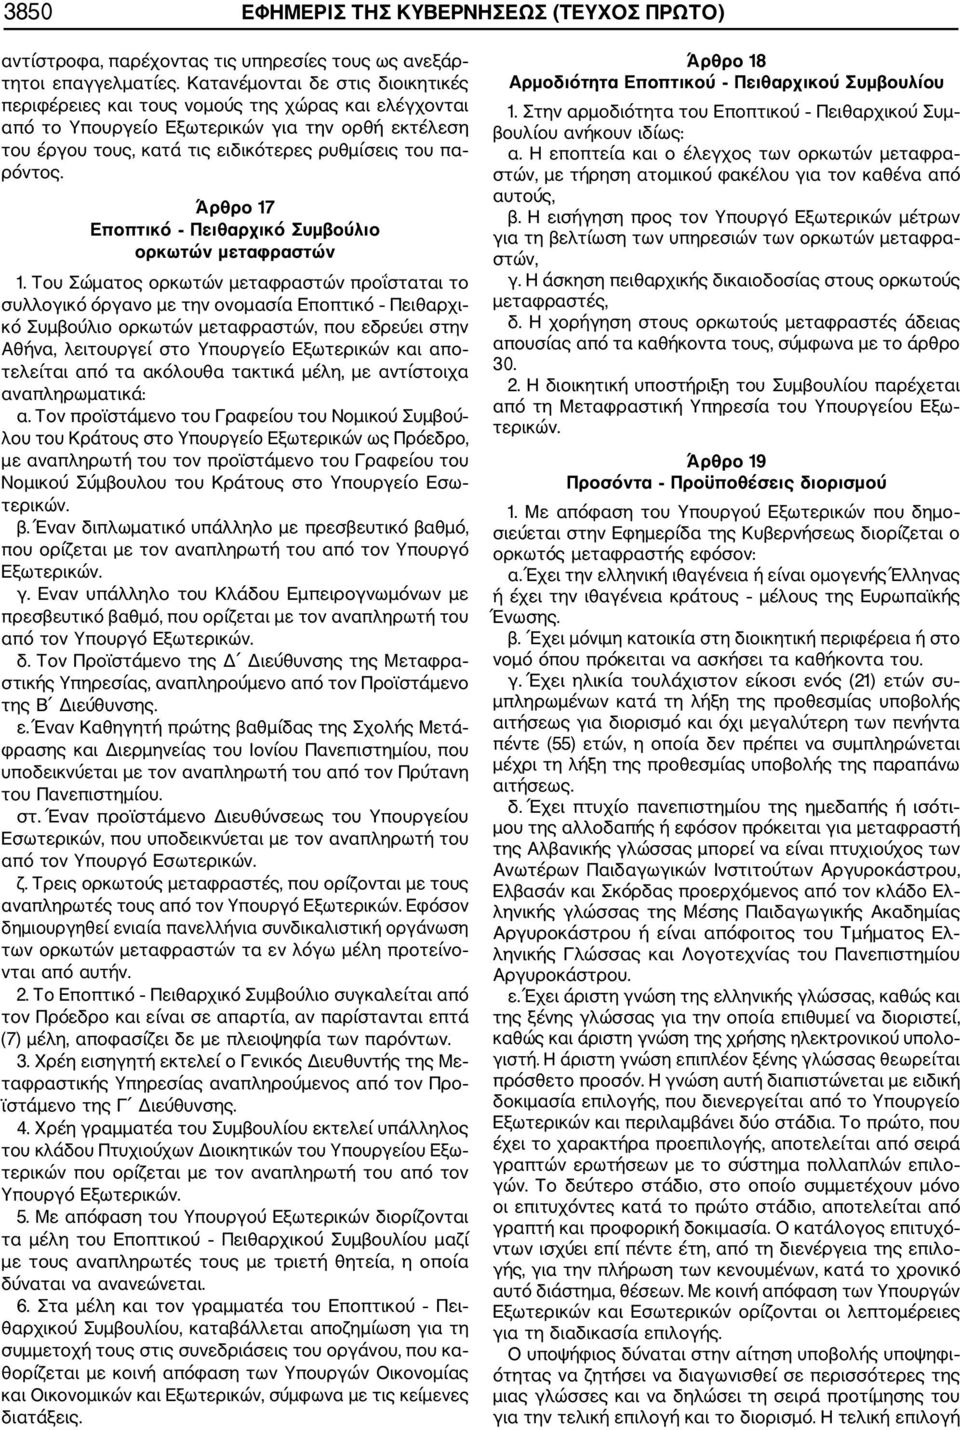 Άρθρο 17 Εποπτικό Πειθαρχικό Συμβούλιο ορκωτών μεταφραστών 1.